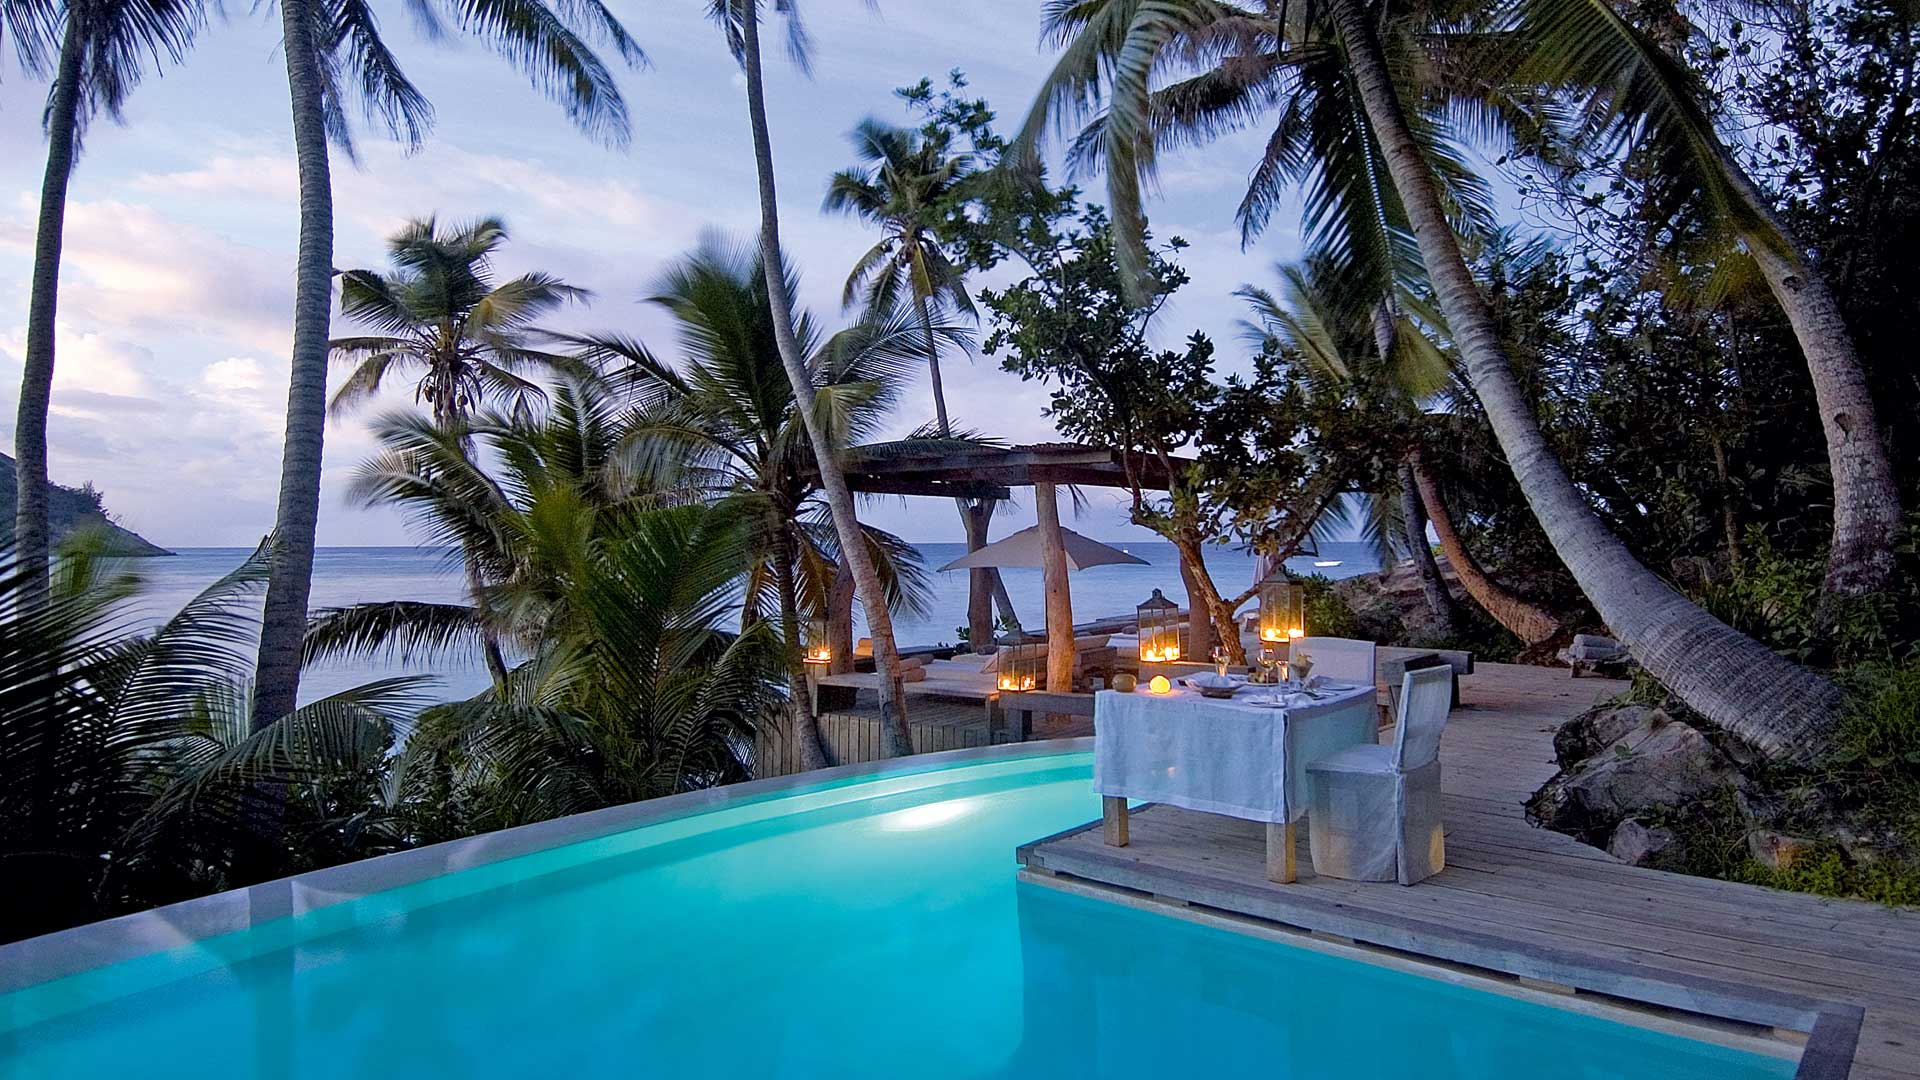 North Island Seychellen Pool mit Palmen